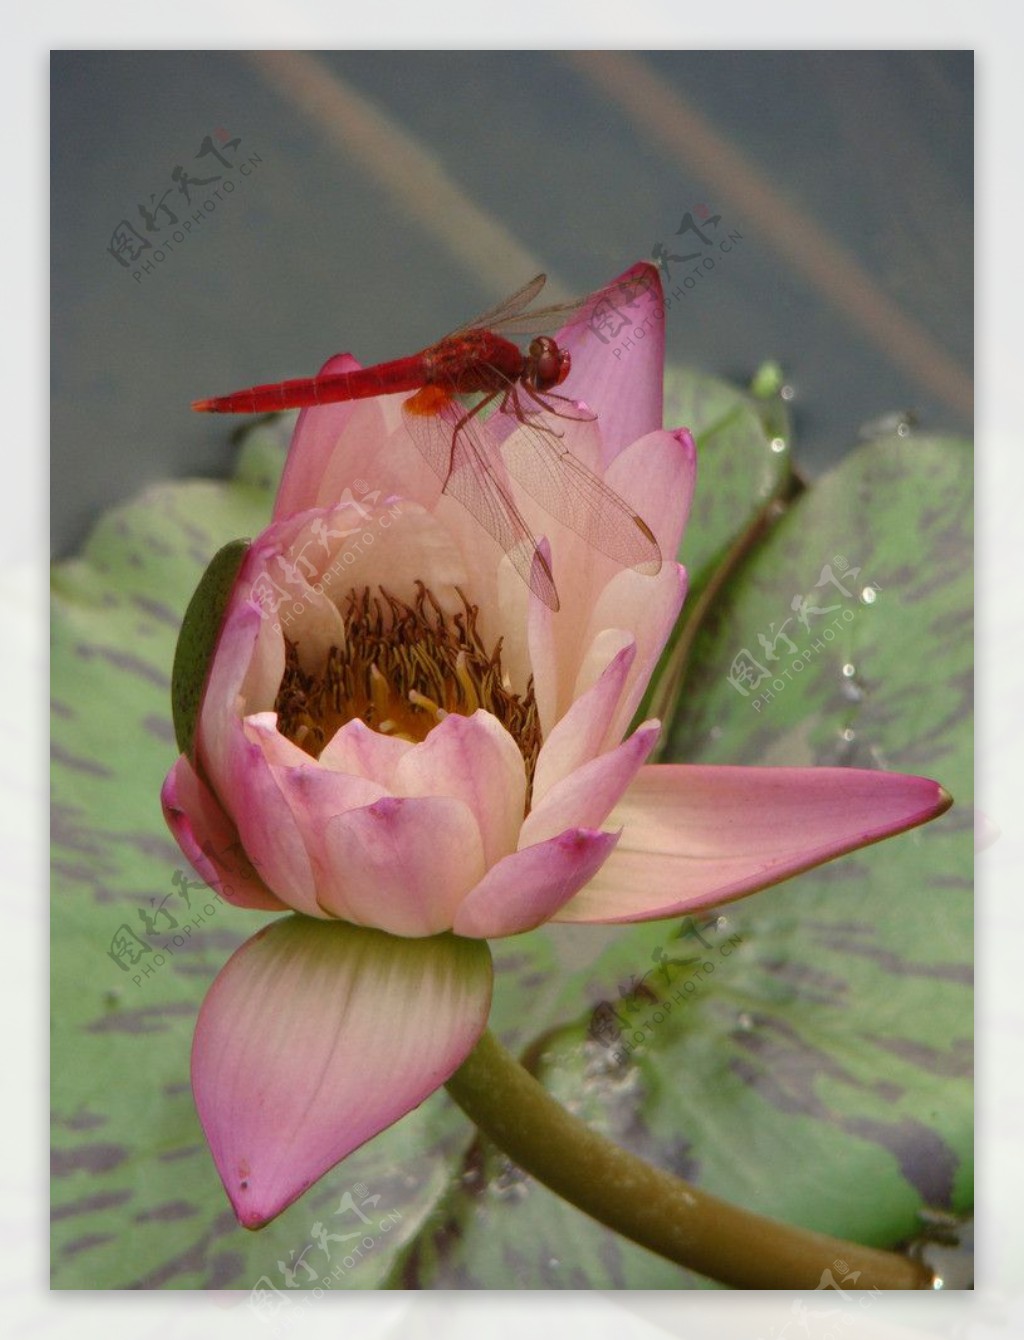 莲花蜻蜓图片